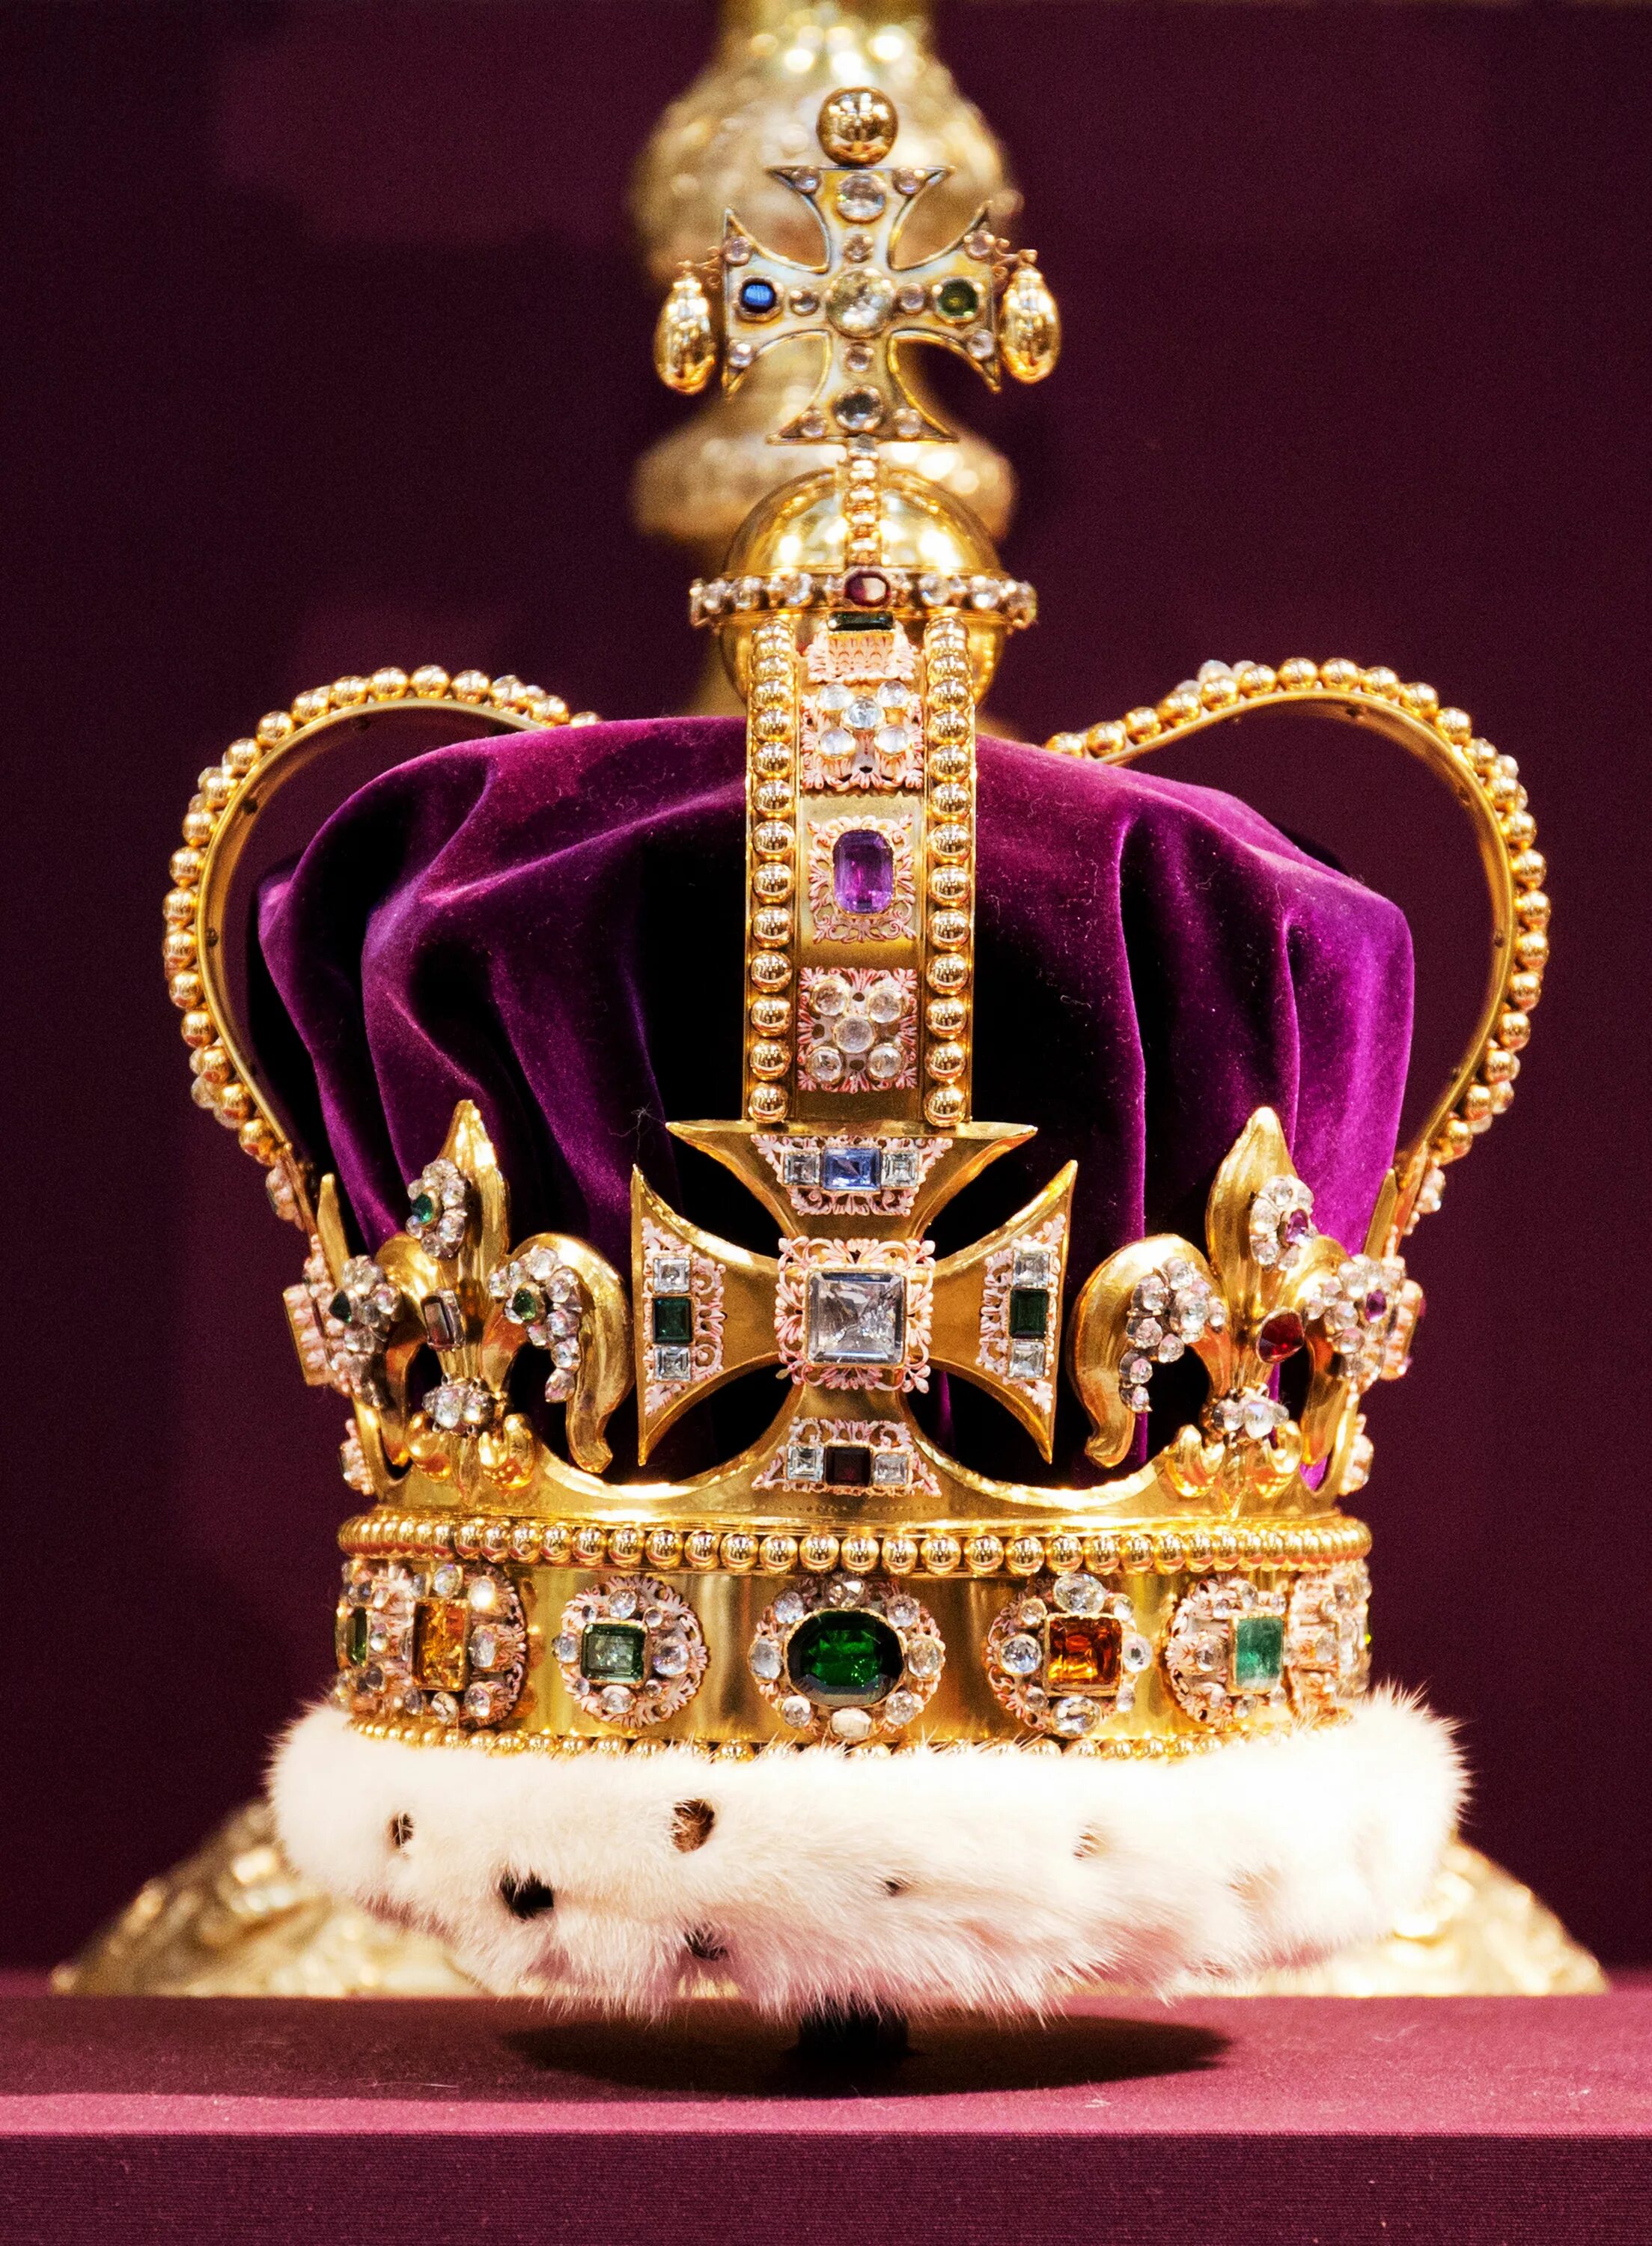 Царская сокровищница. Коронационная корона Святого Эдуарда. Корона Елизаветы 2 на коронации. Crown Jewels (драгоценности короны).